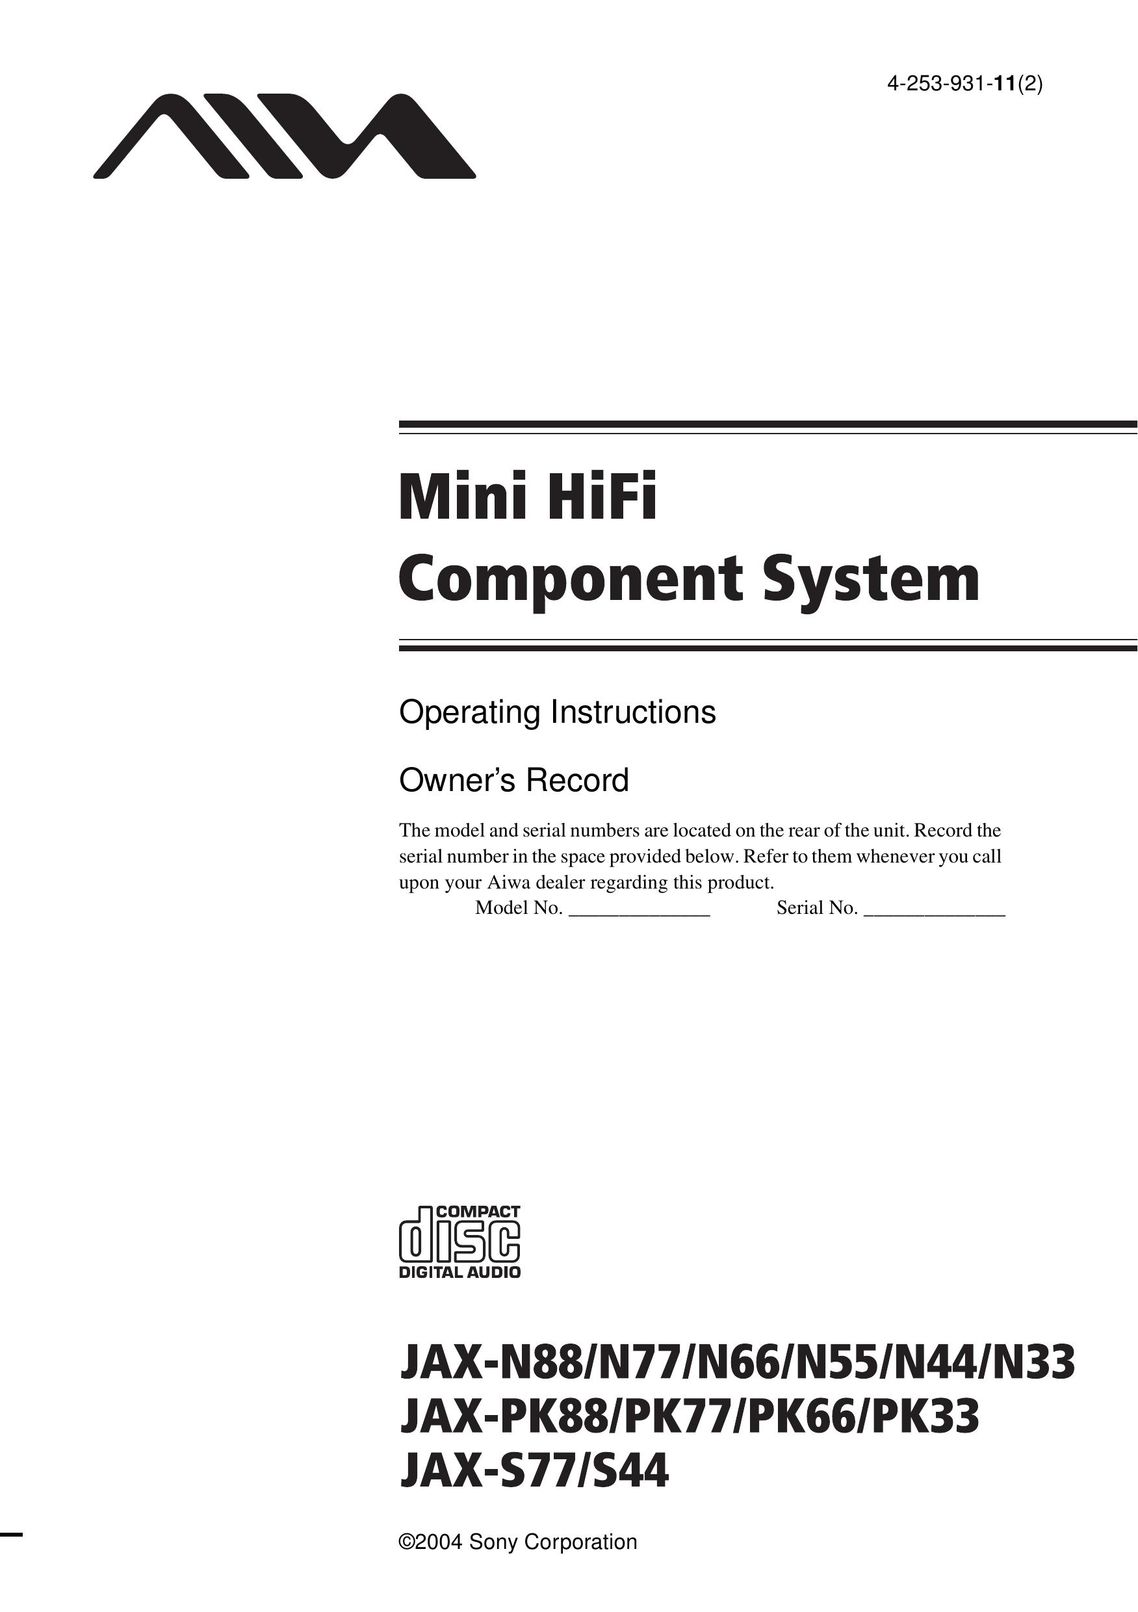 Aiwa JAX-S77 Stereo System User Manual